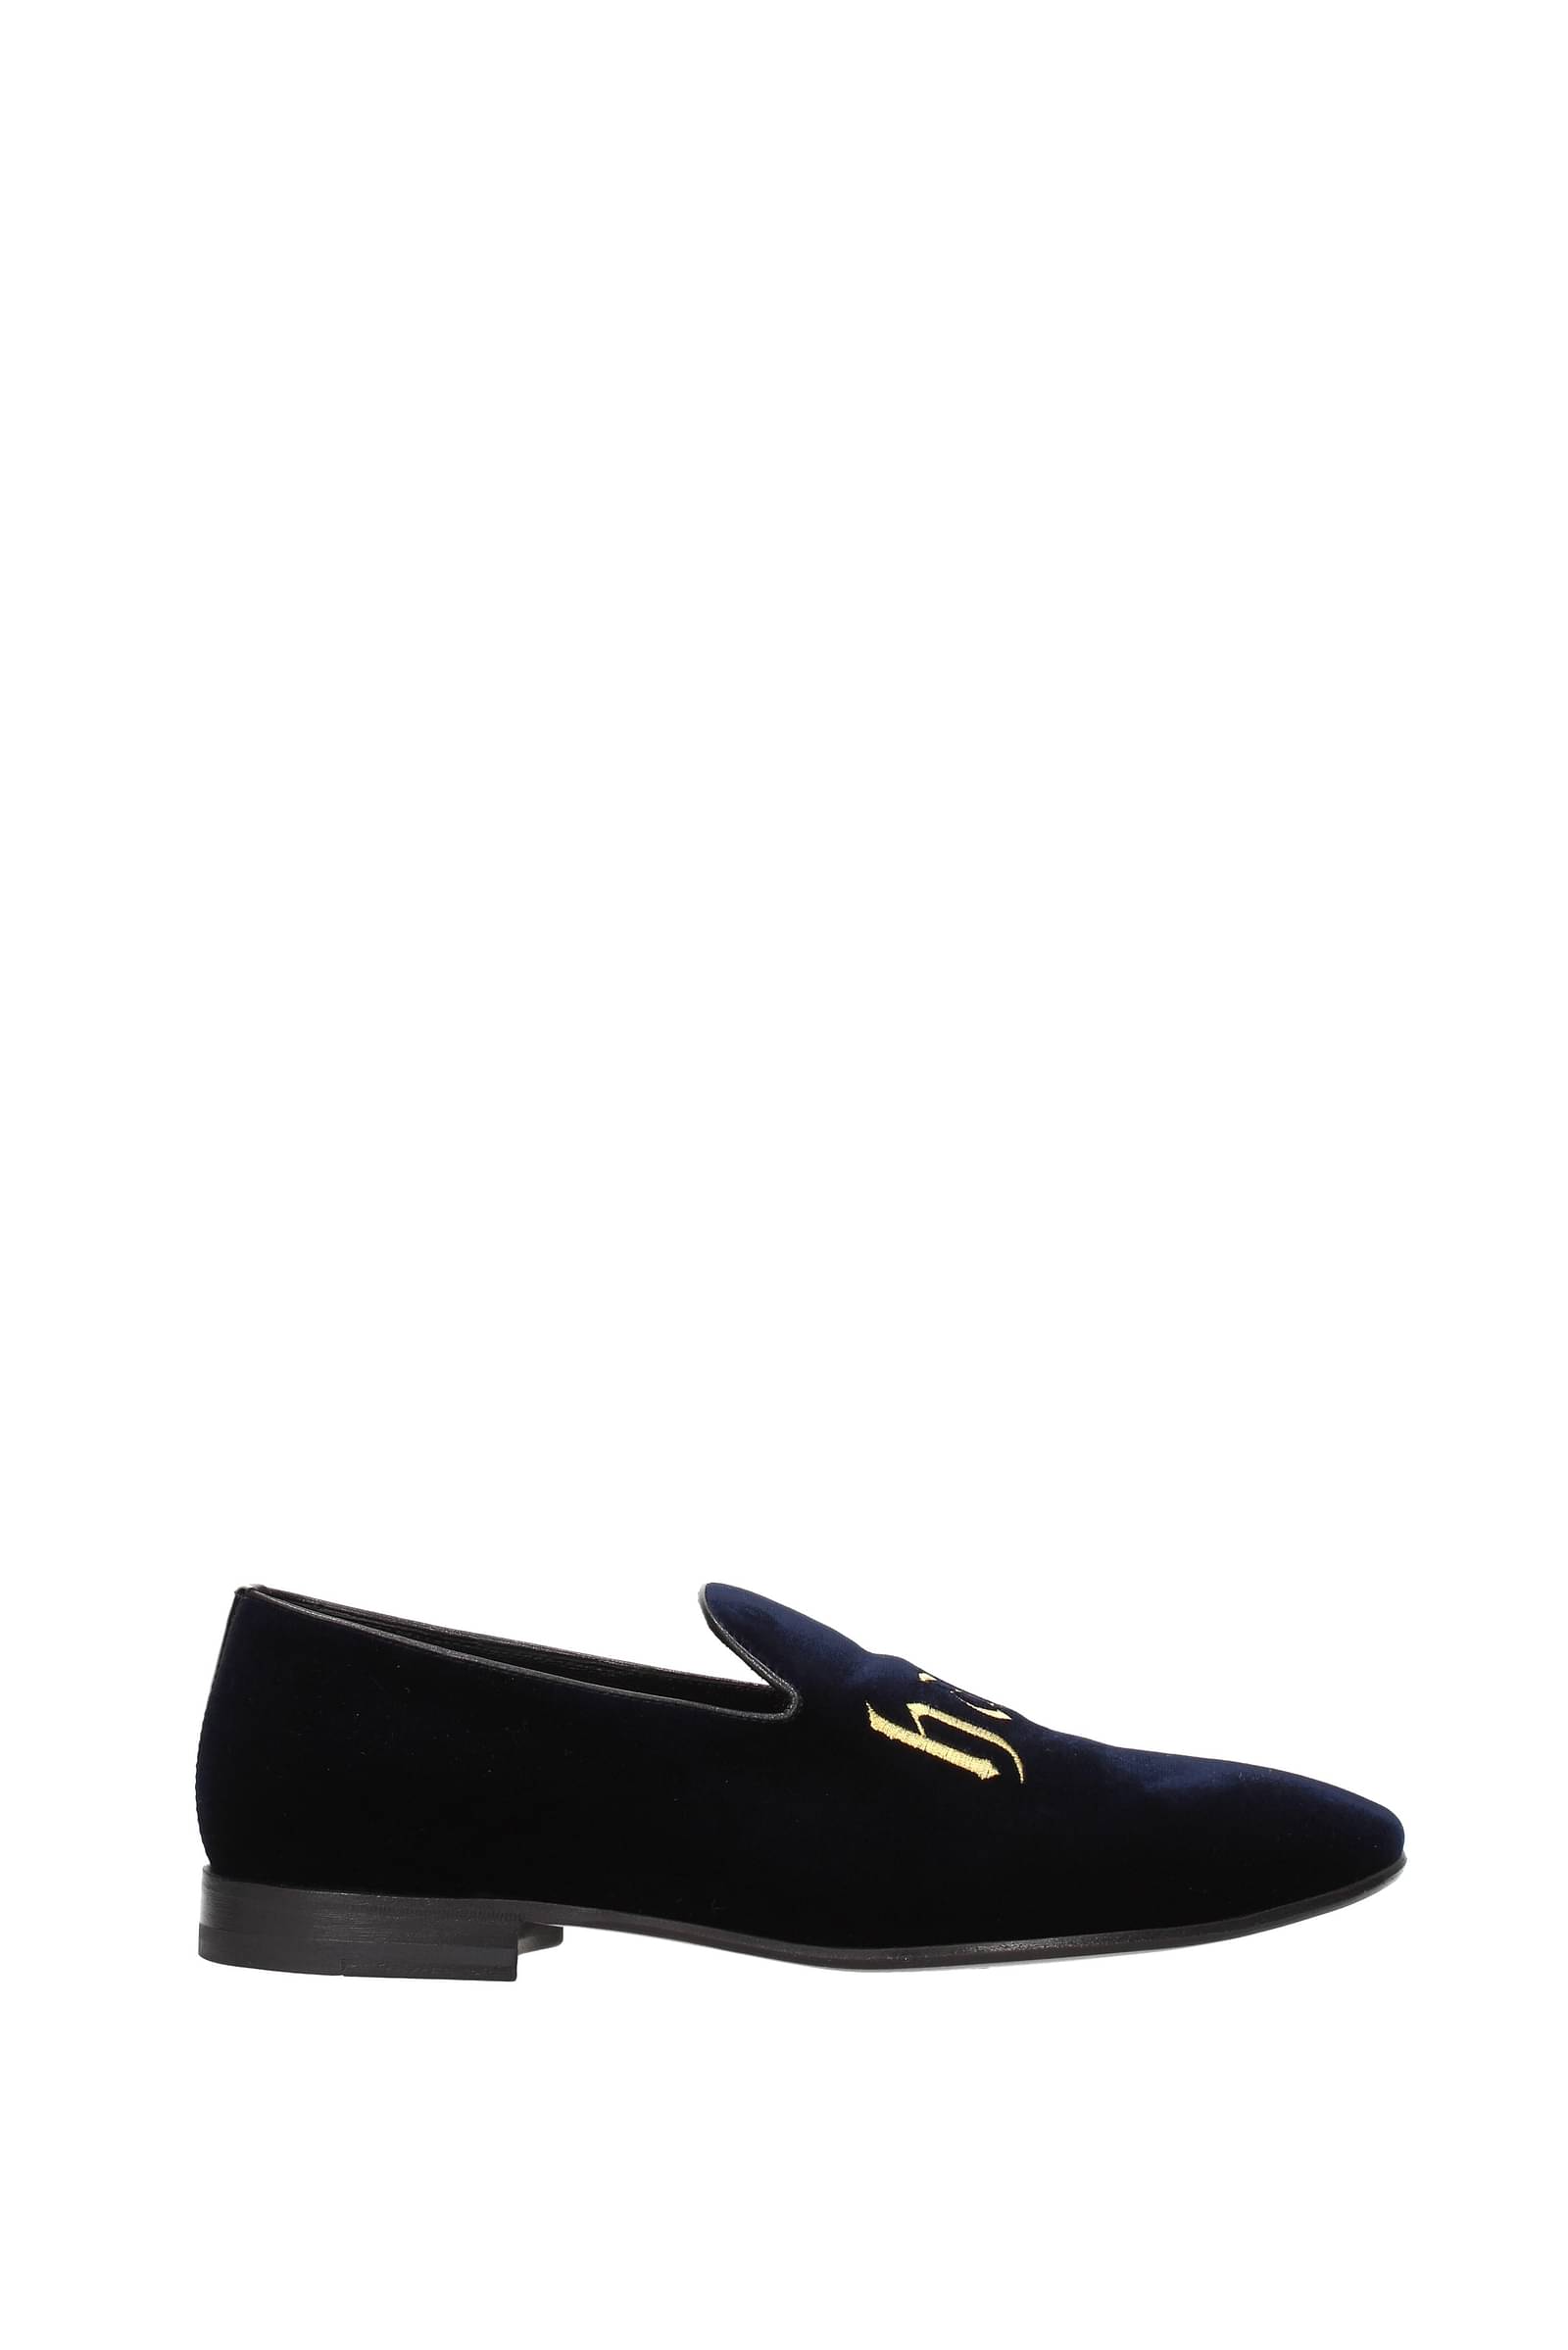 Black for Men Philipp Plein Velvet Loafers in Dark Blue Mens Shoes Slip-on shoes Loafers 